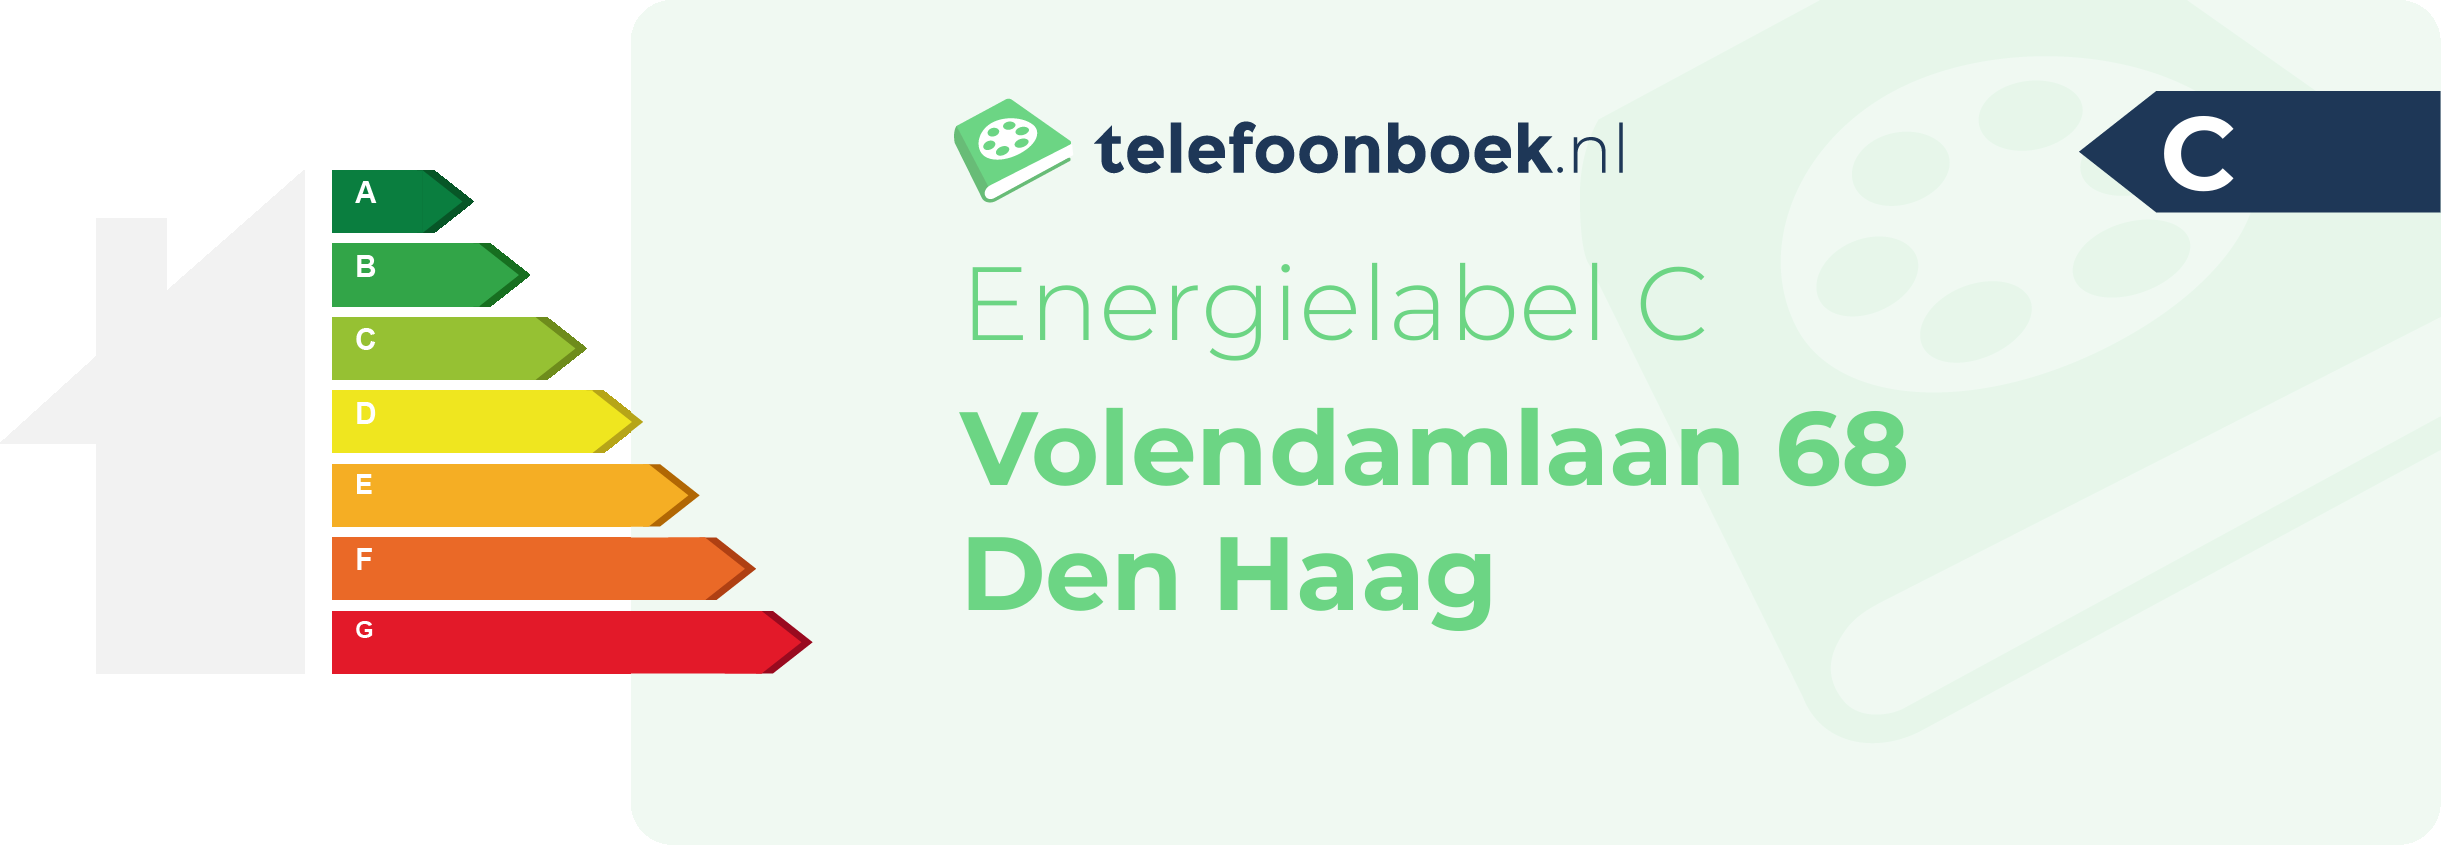 Energielabel Volendamlaan 68 Den Haag